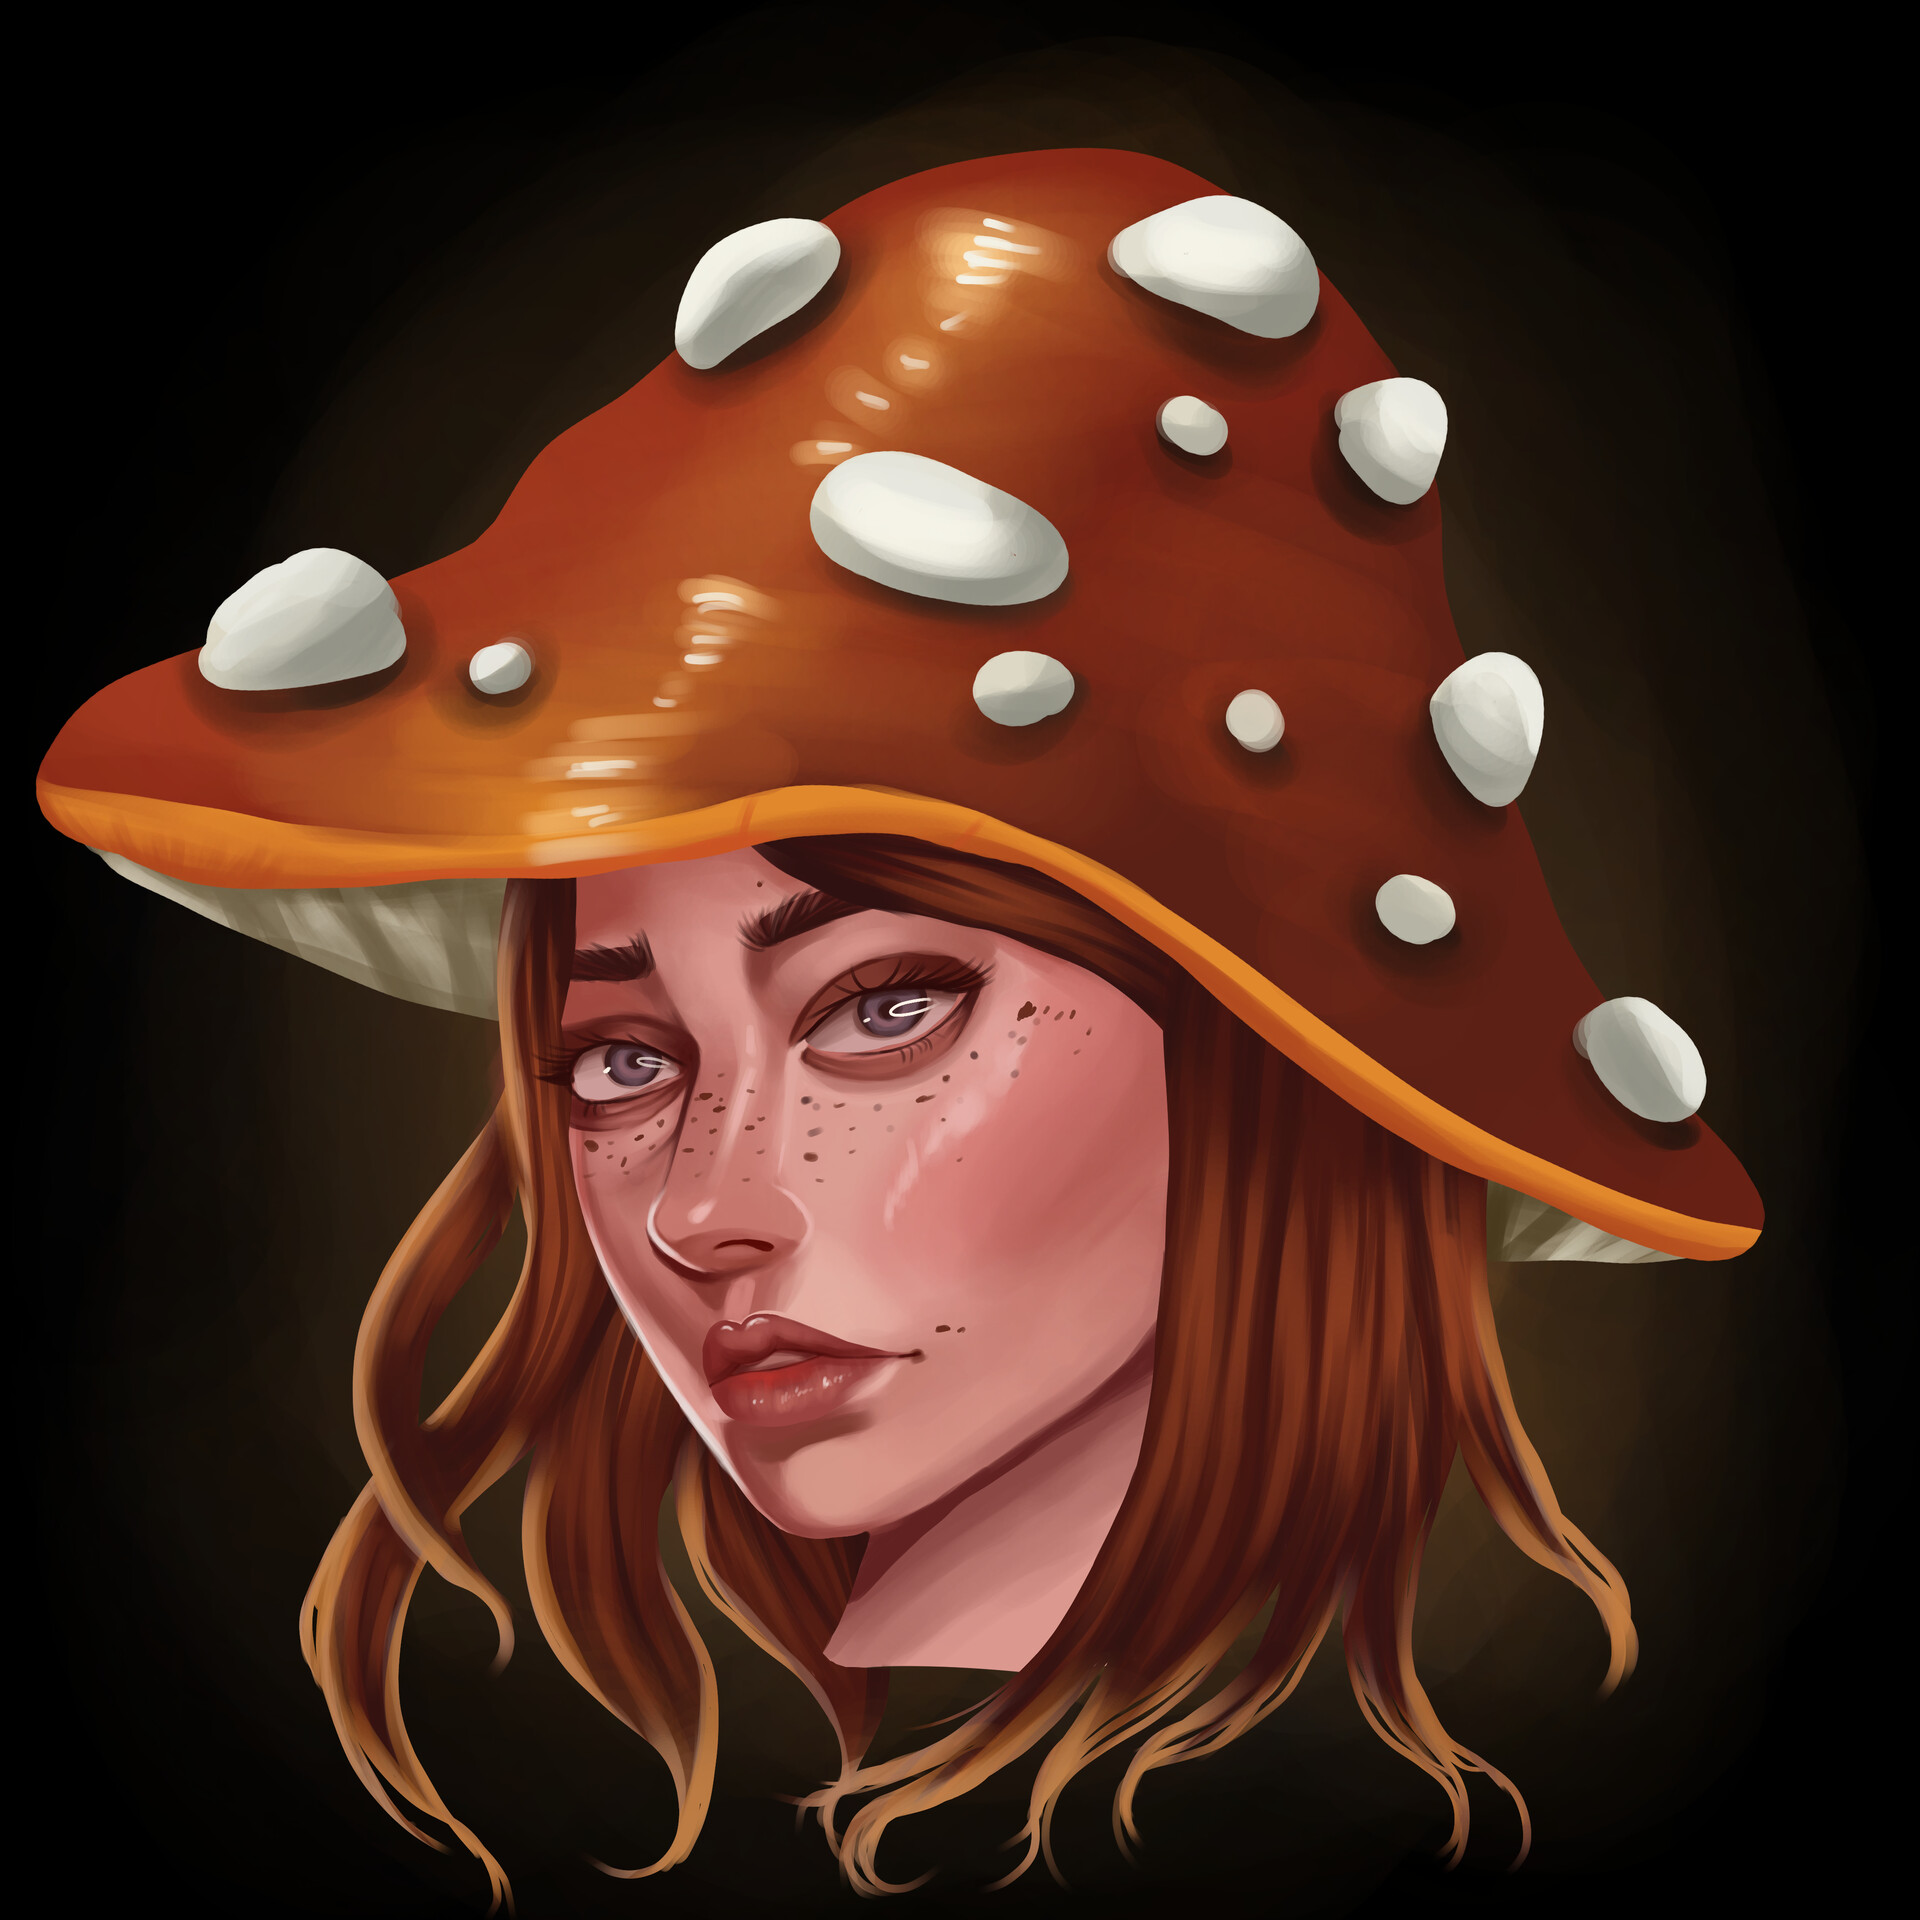 ArtStation - Mushroom Girl